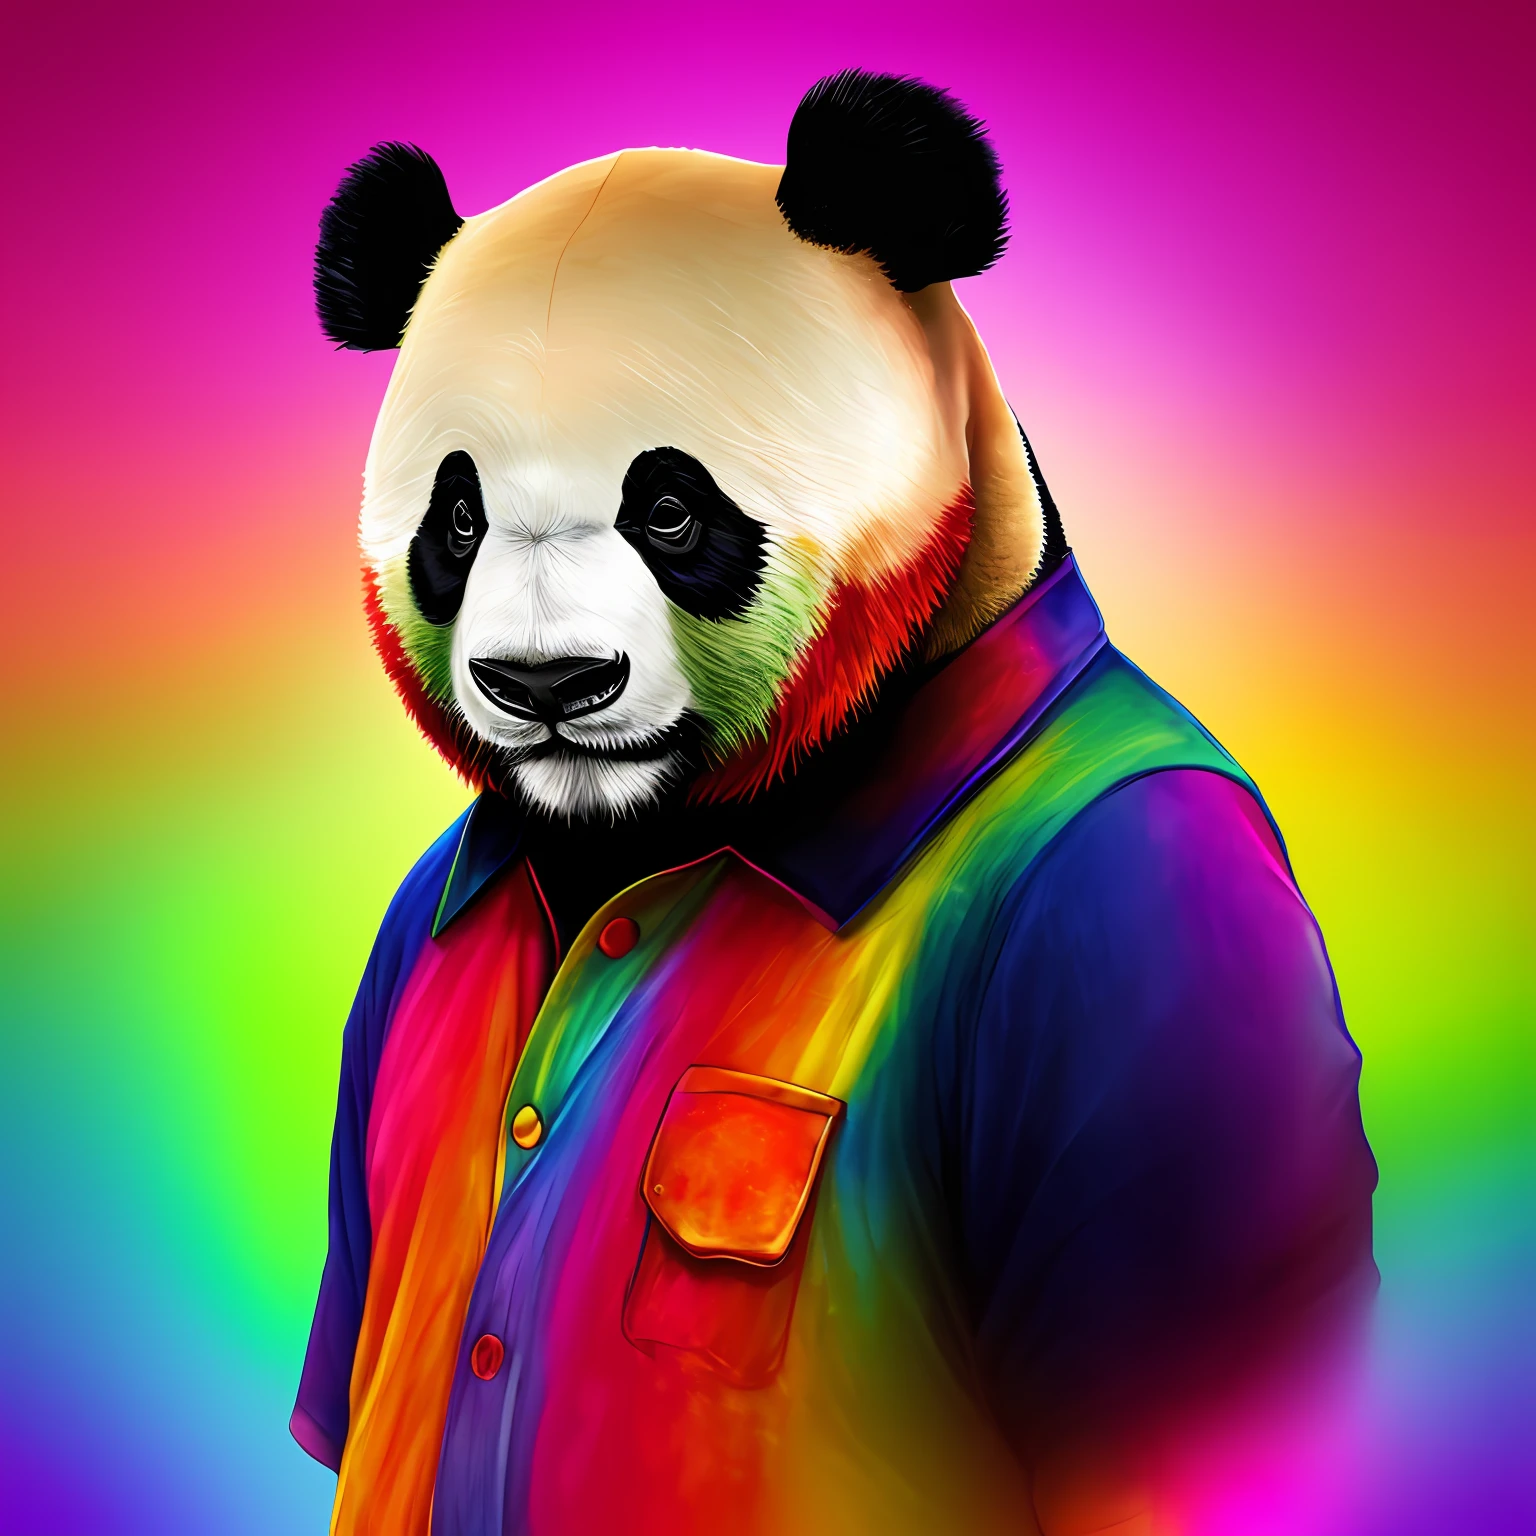 熊猫拟人化, 头是一只大熊猫, 身体是人类, 五颜六色的衣服, 背景是萨凡纳--自动